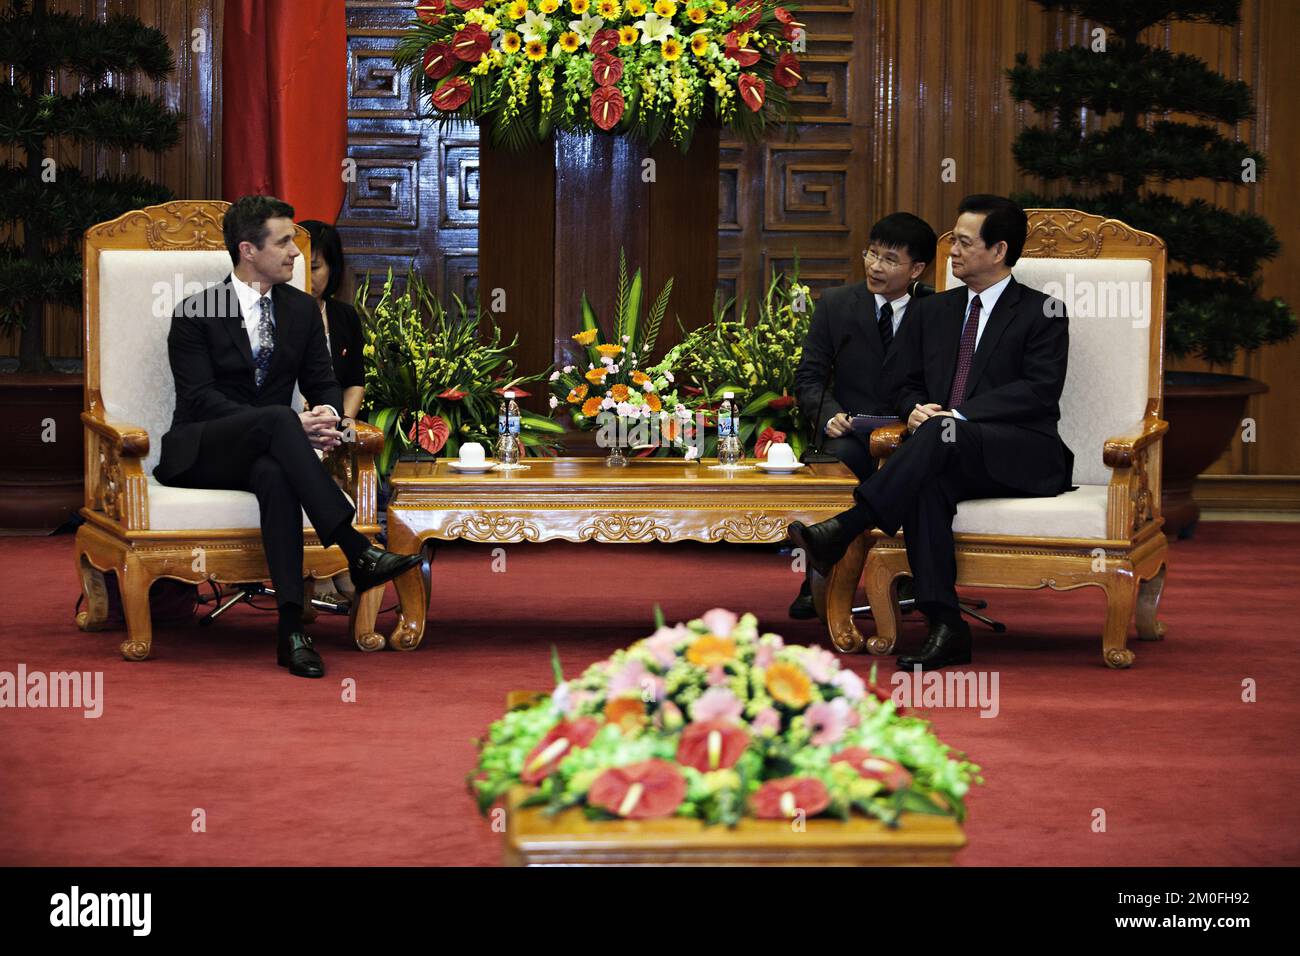 Kronprins Frederik rencontre le Premier Ministre S.E. M. Nguyen Tan Dung, au Bureau du Gouvernement à Hanoï sur 28 novembre. PHOTOGRAPHE PETER MYDSKE / POLFOTO Banque D'Images